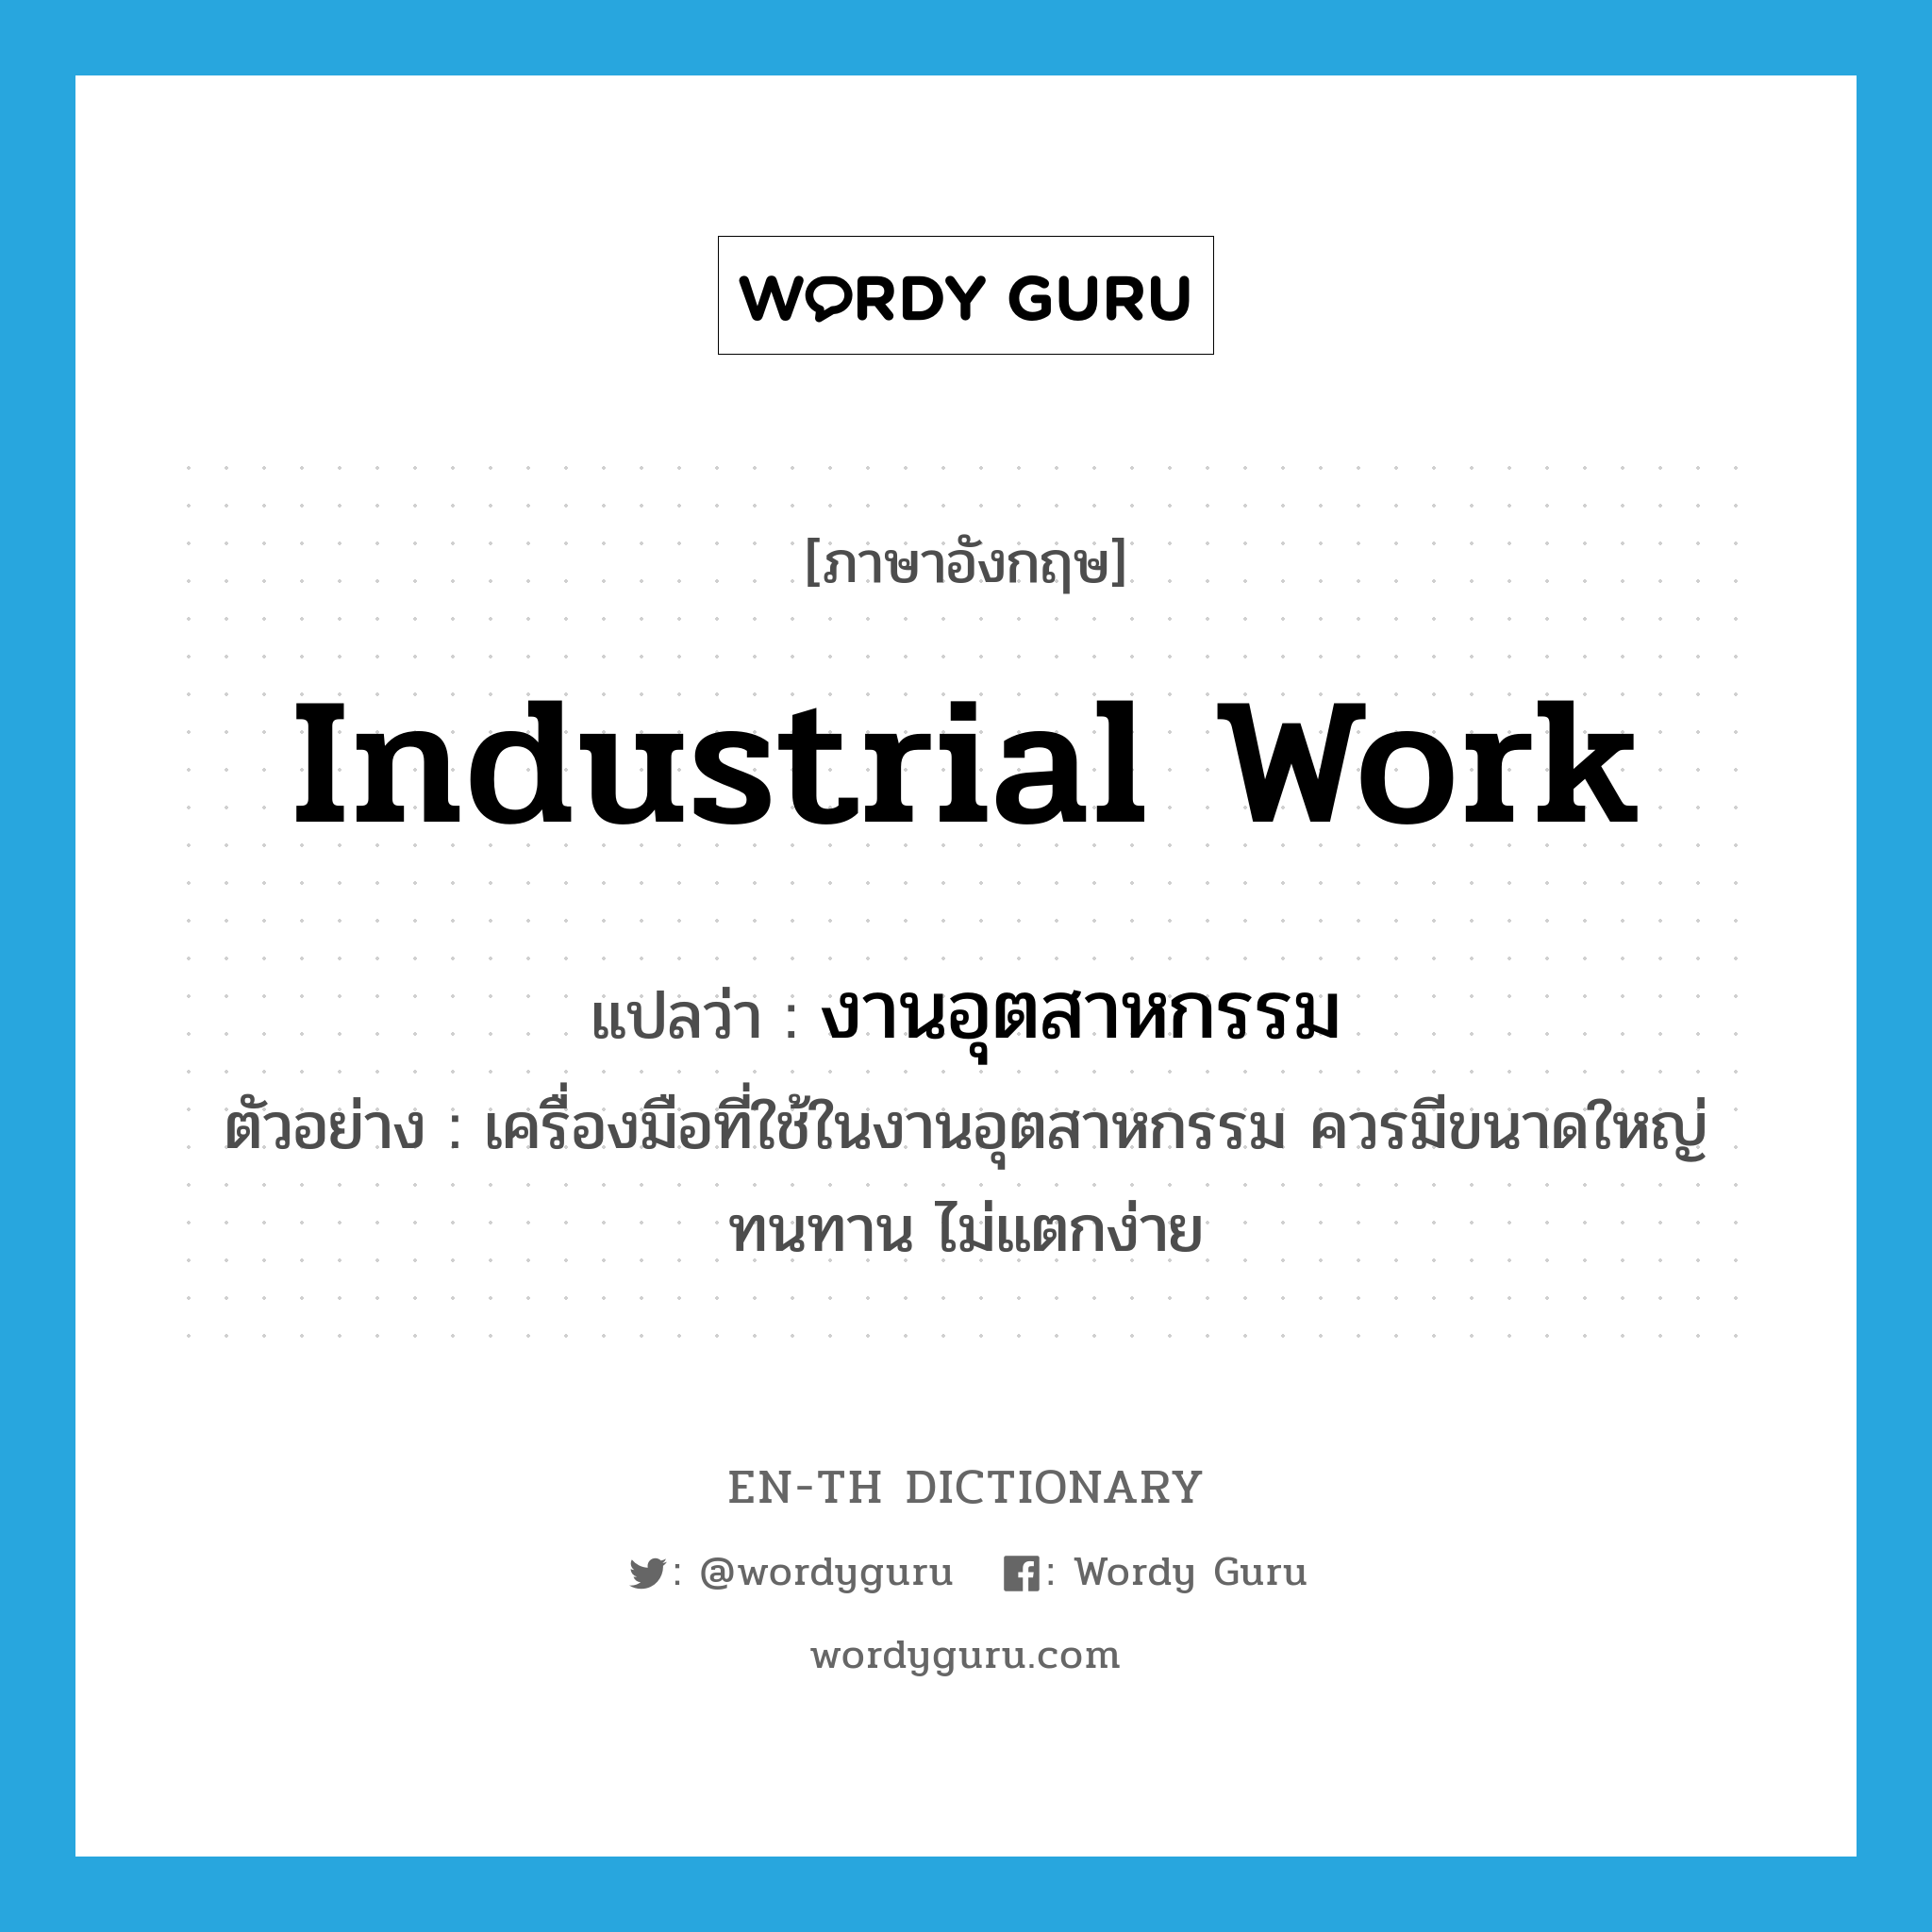 industrial work แปลว่า?, คำศัพท์ภาษาอังกฤษ industrial work แปลว่า งานอุตสาหกรรม ประเภท N ตัวอย่าง เครื่องมือที่ใช้ในงานอุตสาหกรรม ควรมีขนาดใหญ่ ทนทาน ไม่แตกง่าย หมวด N